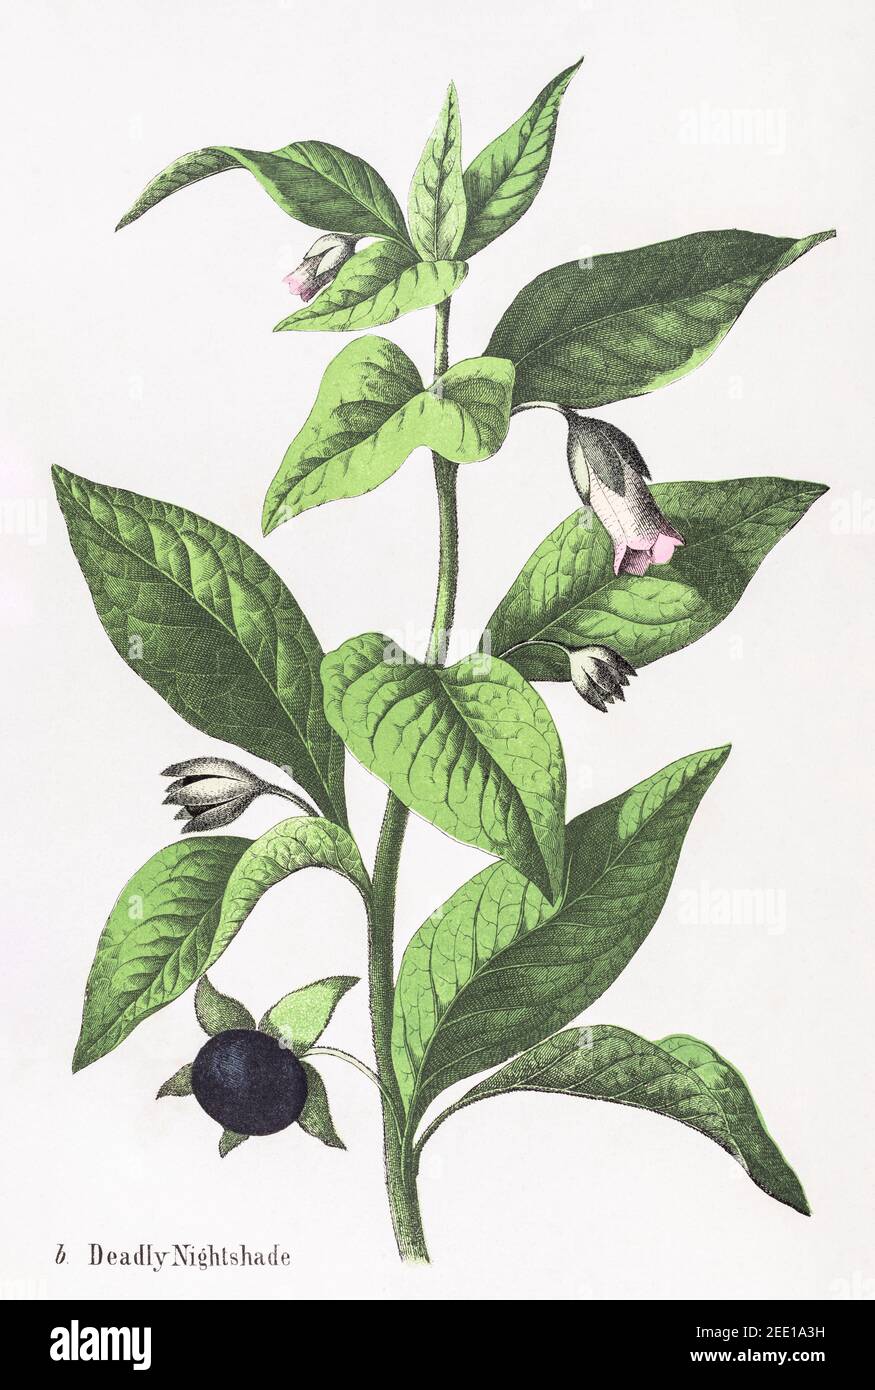 Digital restaurierte viktorianische botanische Illustration von Deadly Nightshade / Atropa belladonna aus dem 19th. Jahrhundert. Informationen zu Quelle und Prozess finden Sie in den Hinweisen. Stockfoto